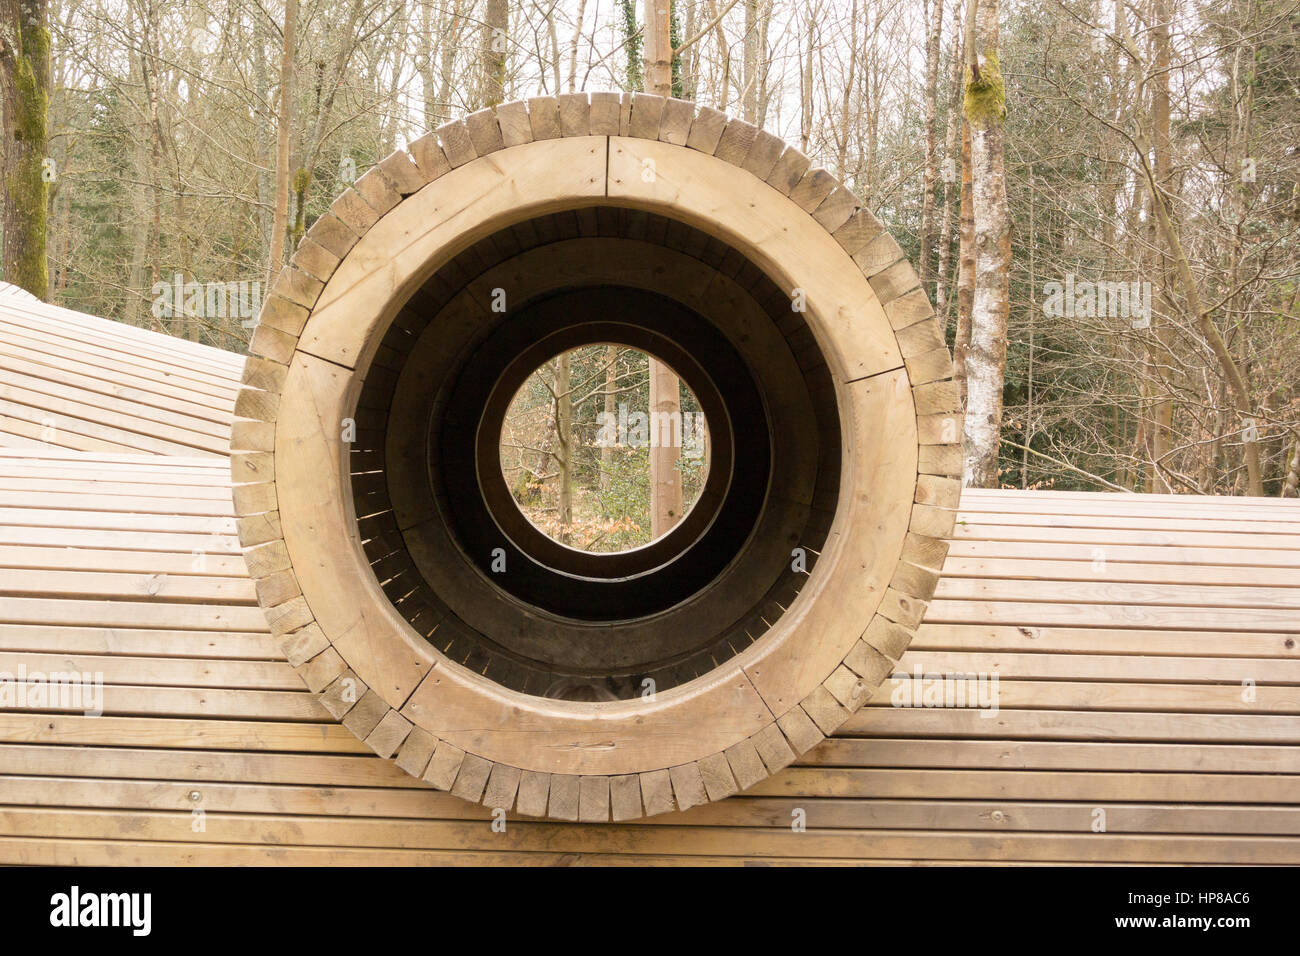 Particolare di una struttura di arrampicata in legno in un bosco. Tubi cavi per arrampicarsi su e attraverso. Foto Stock